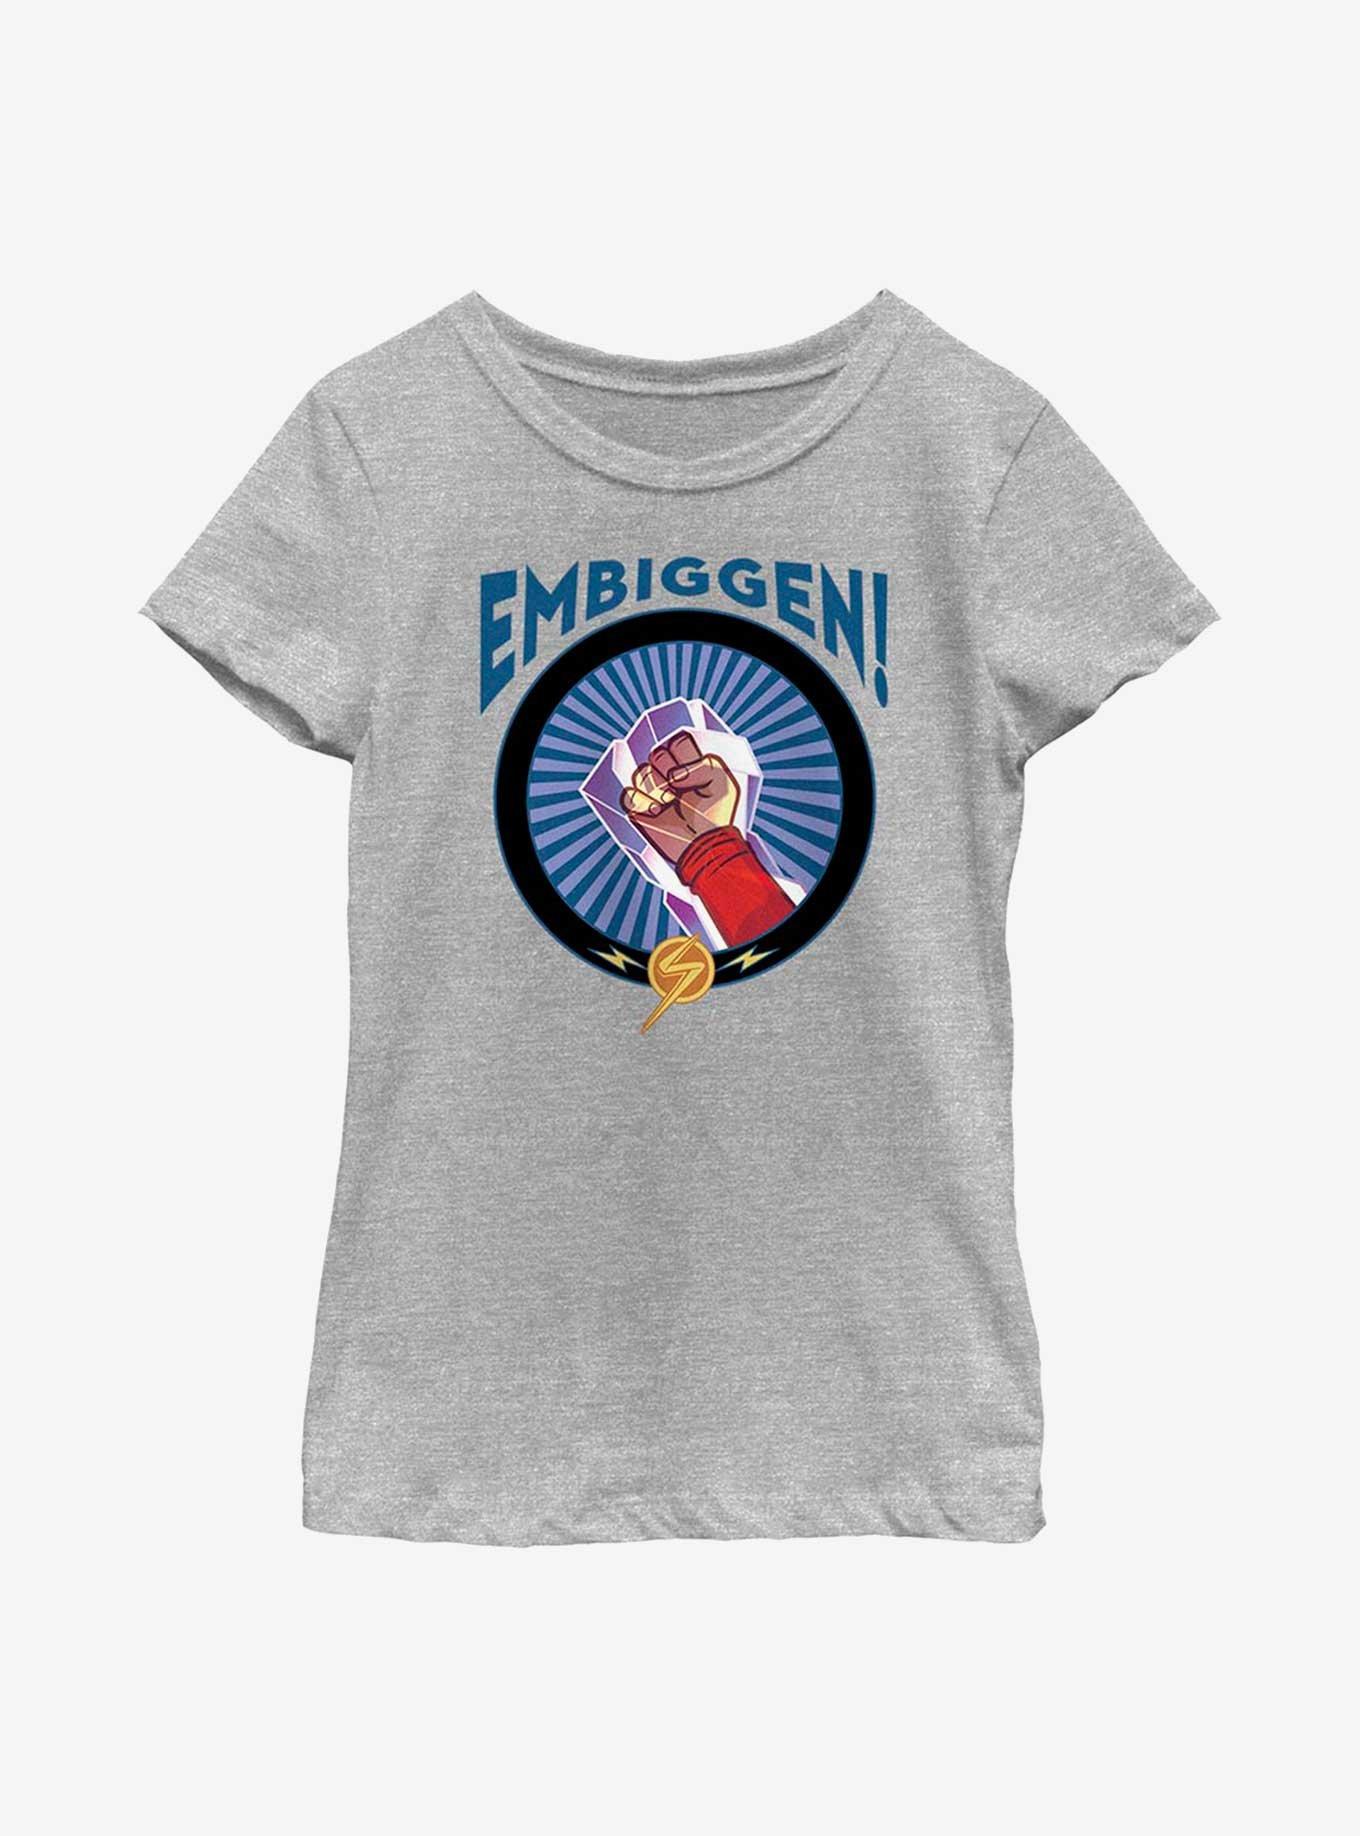 Marvel Ms. Marvel Embiggen! Youth Girls T-Shirt, ATH HTR, hi-res